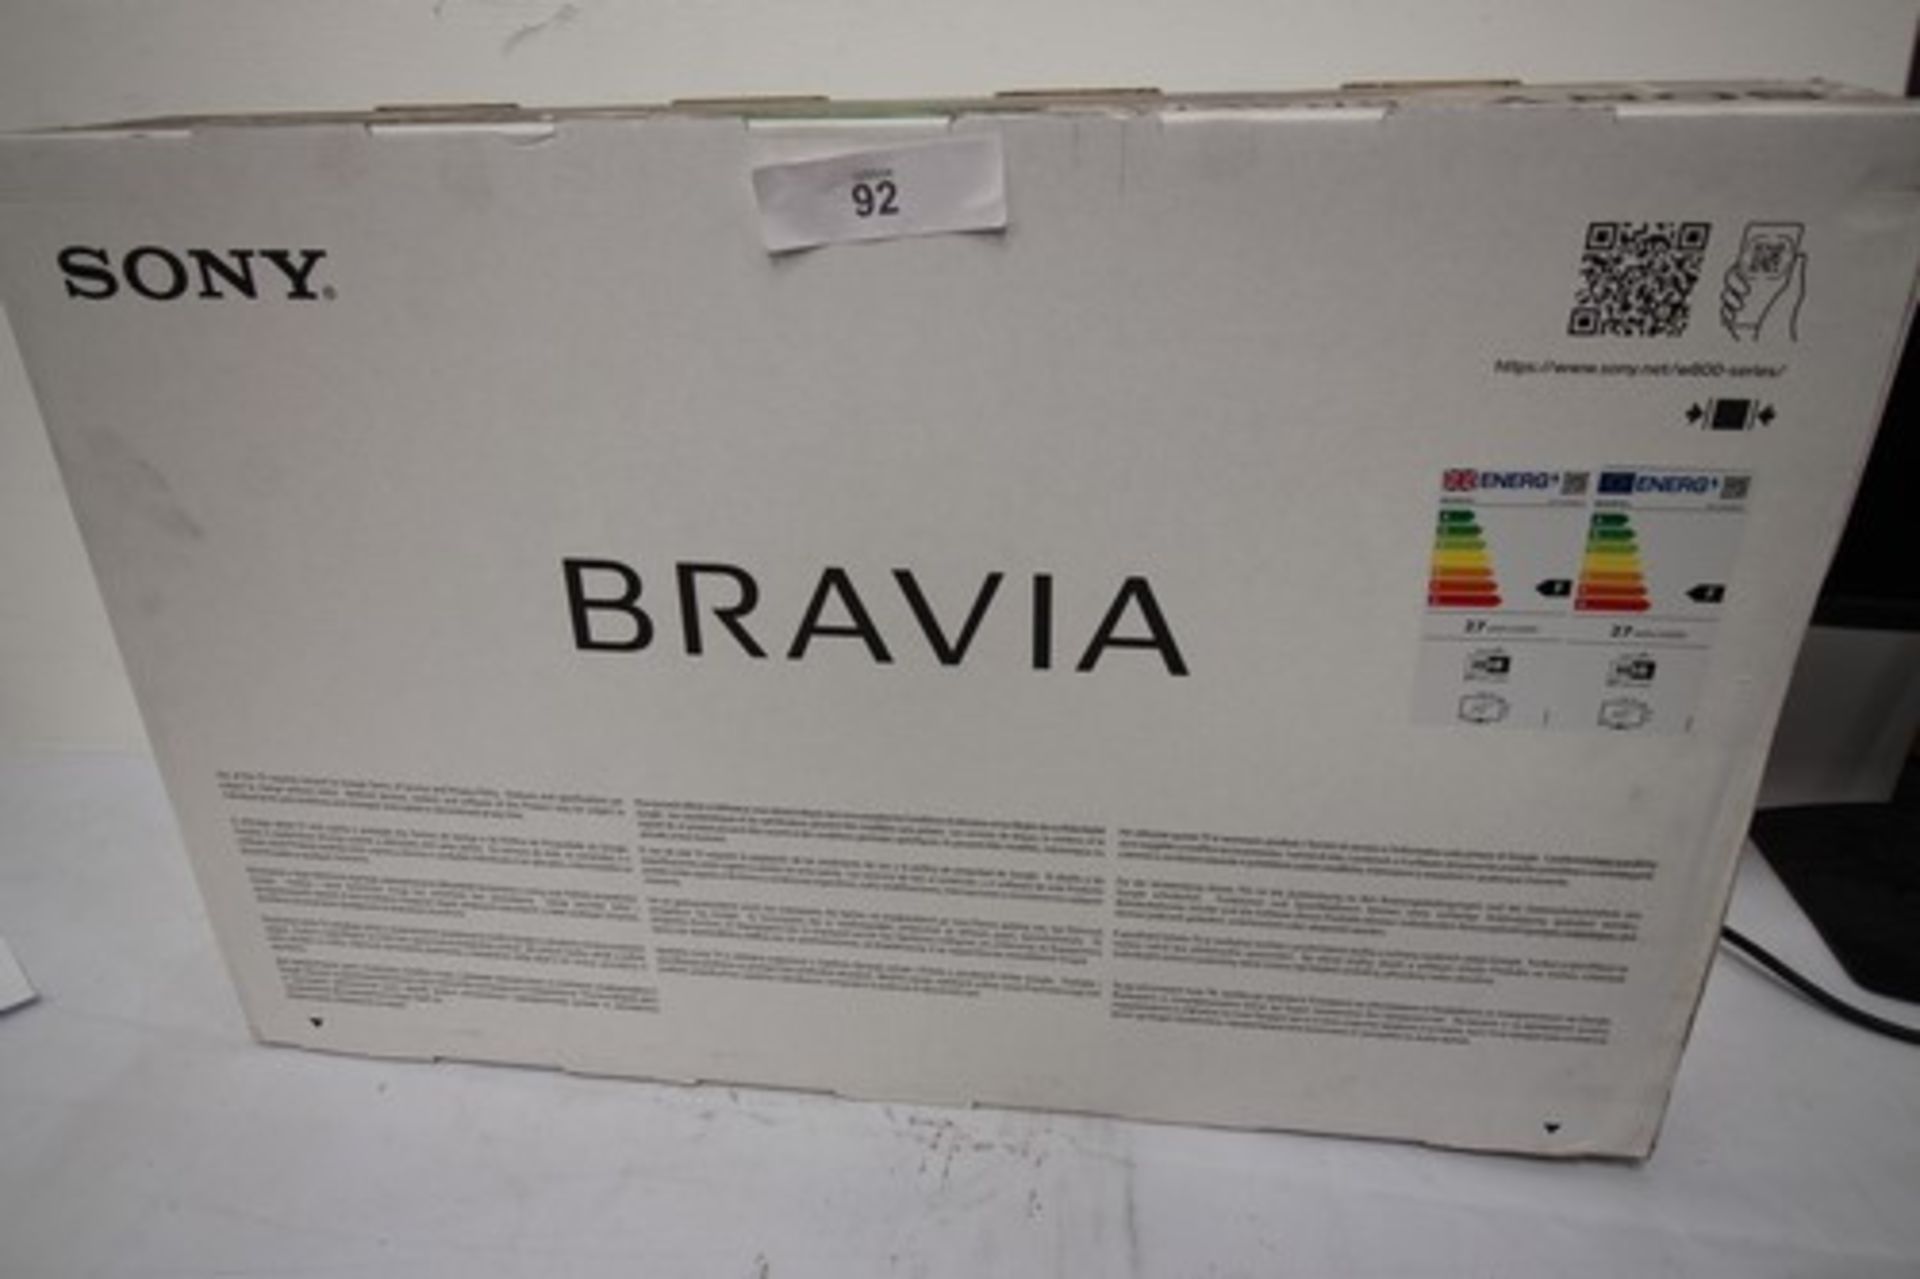 1 x Sony Bravia 32" TV, Model 32W800 - new in tatty box (ES2)